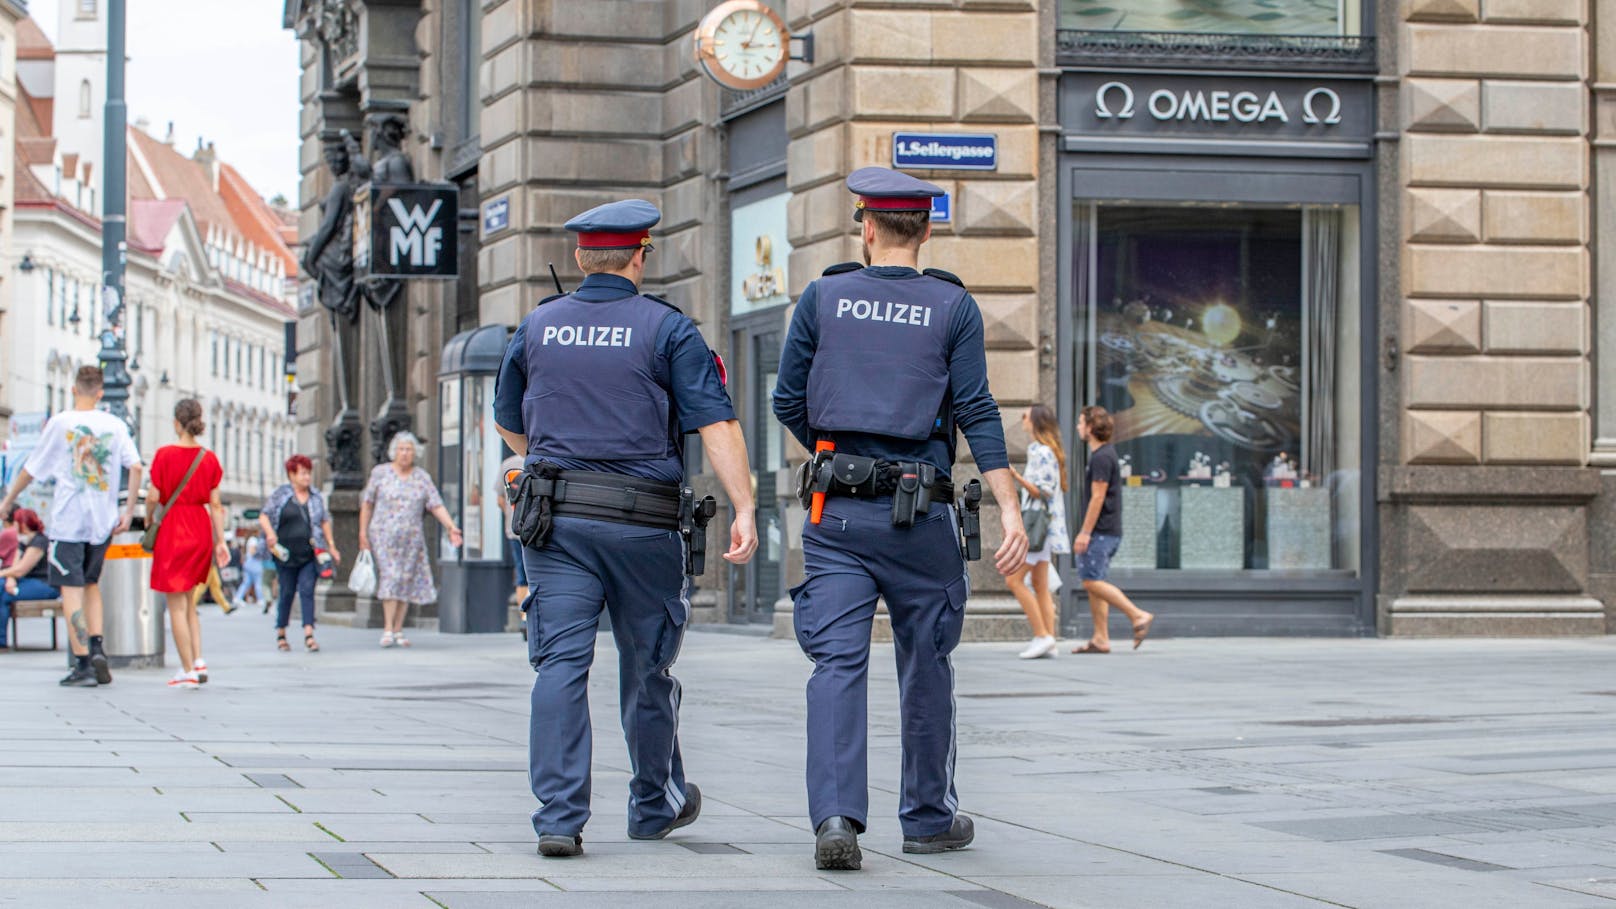 Polizeibeamte auf Streife in Wien